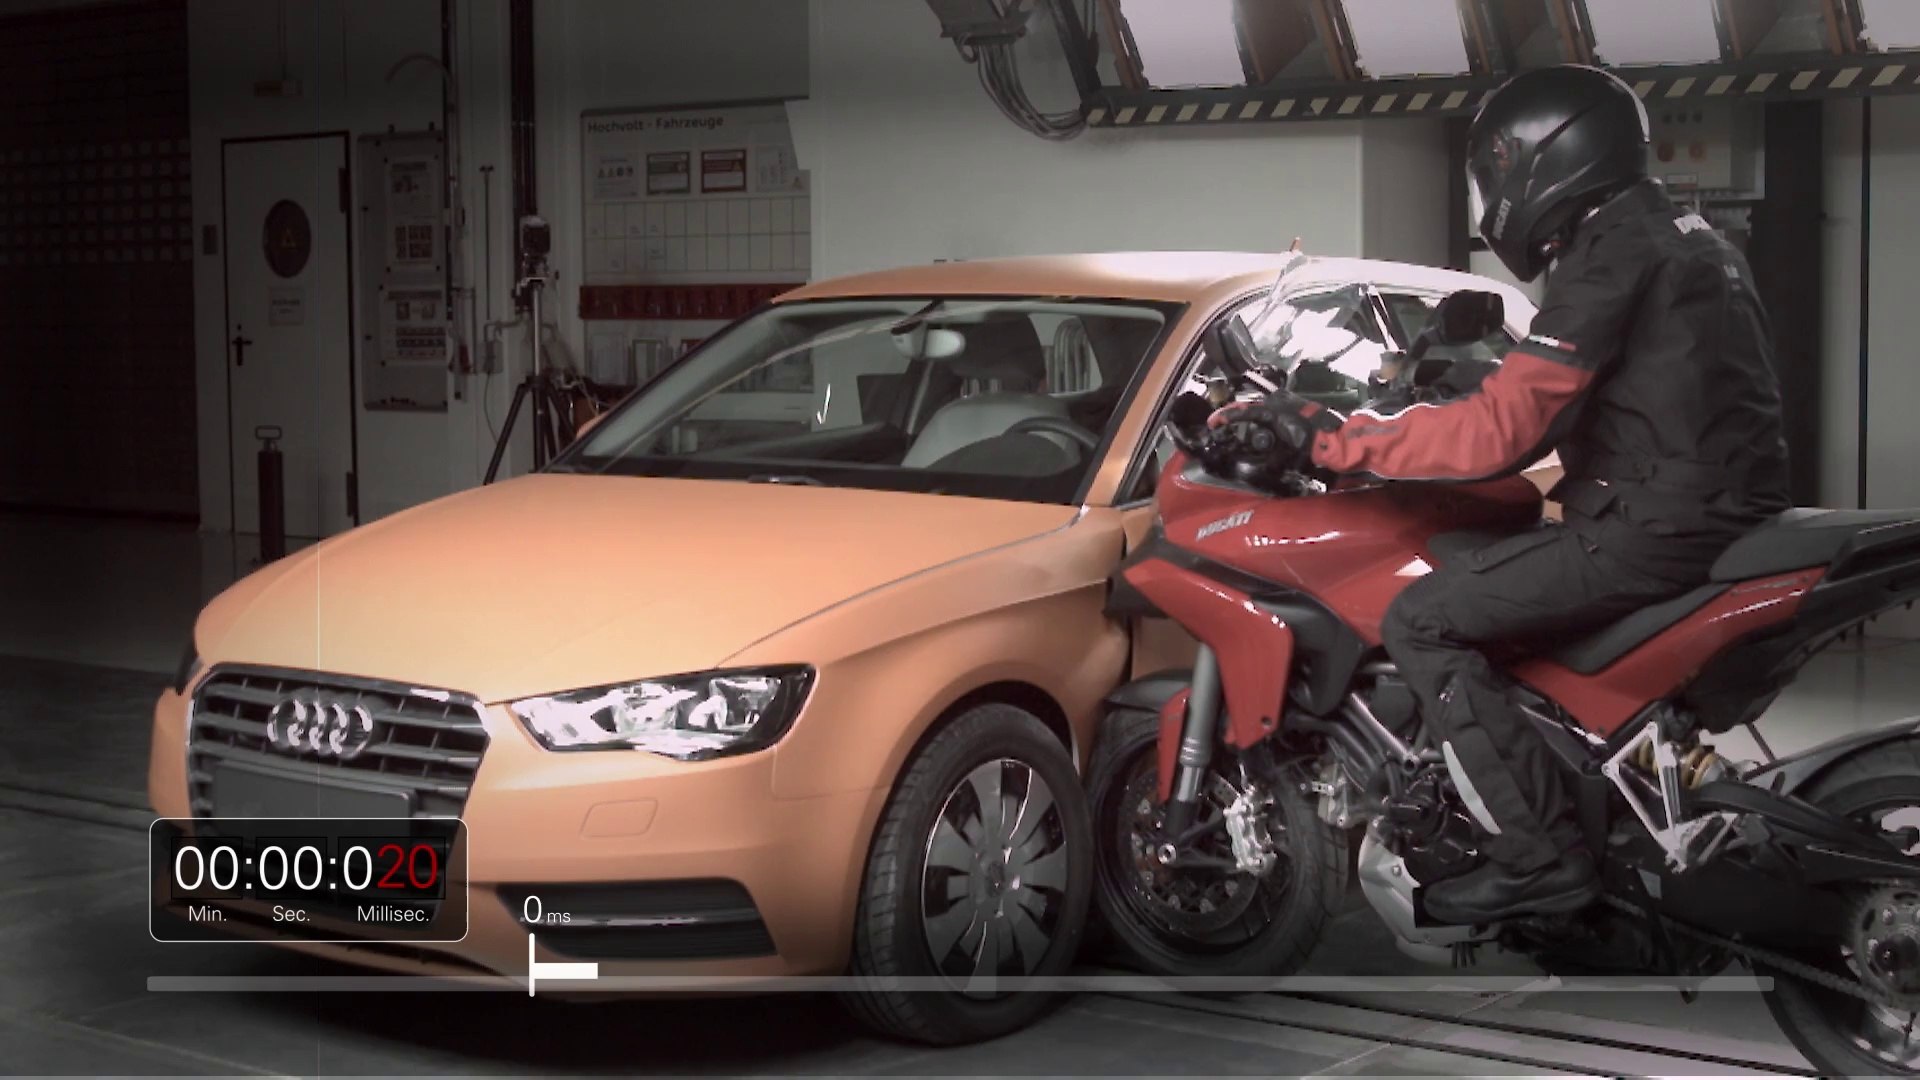 Le crash test moto de Ducati - Vidéo Dailymotion